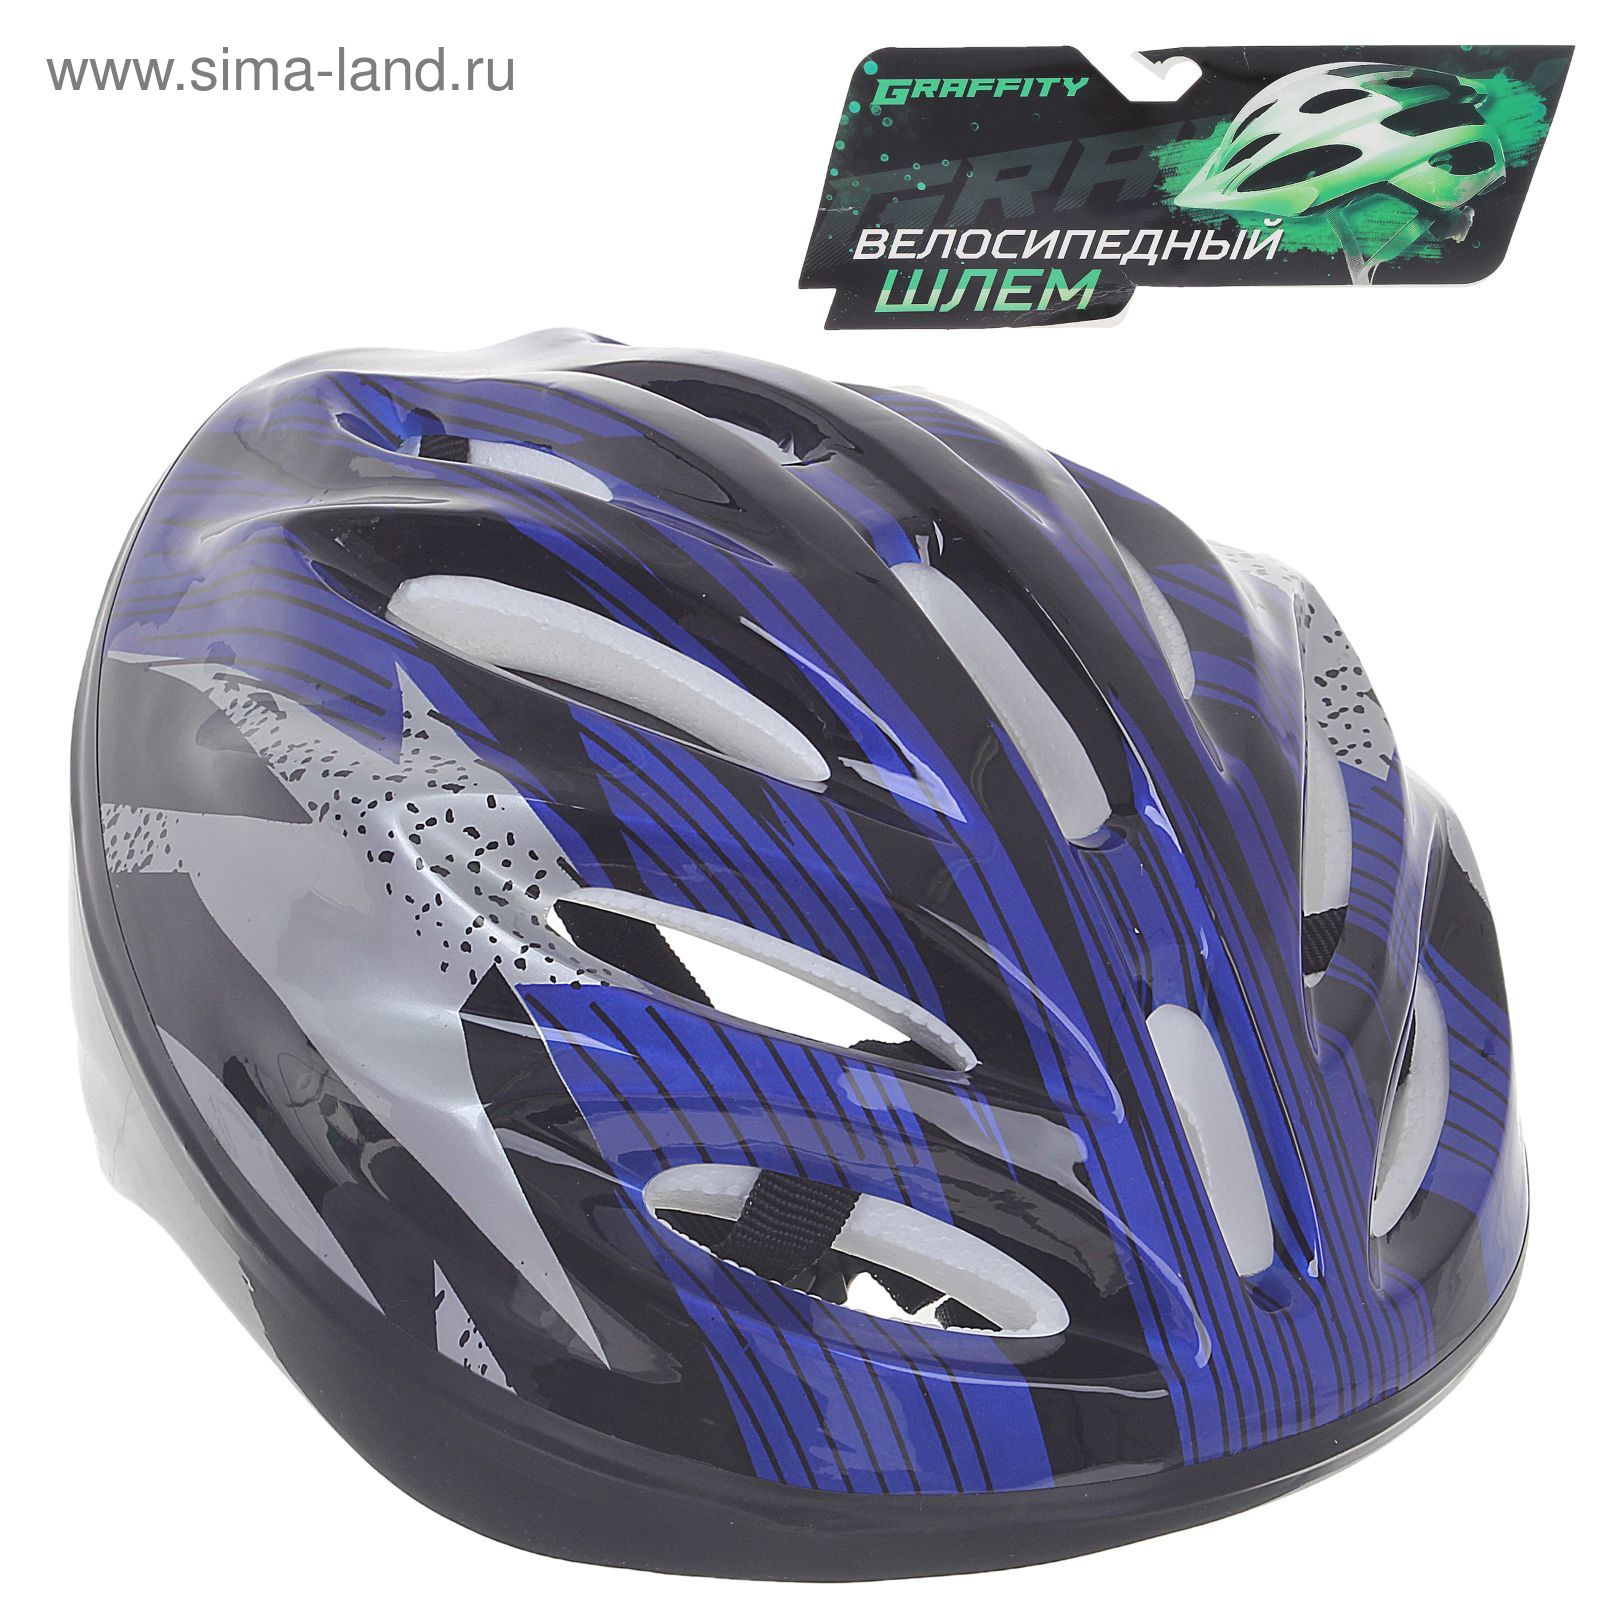 Шлем велосипедиста взрослый ОТ-11, размер L (56-58 см), цвет: синий